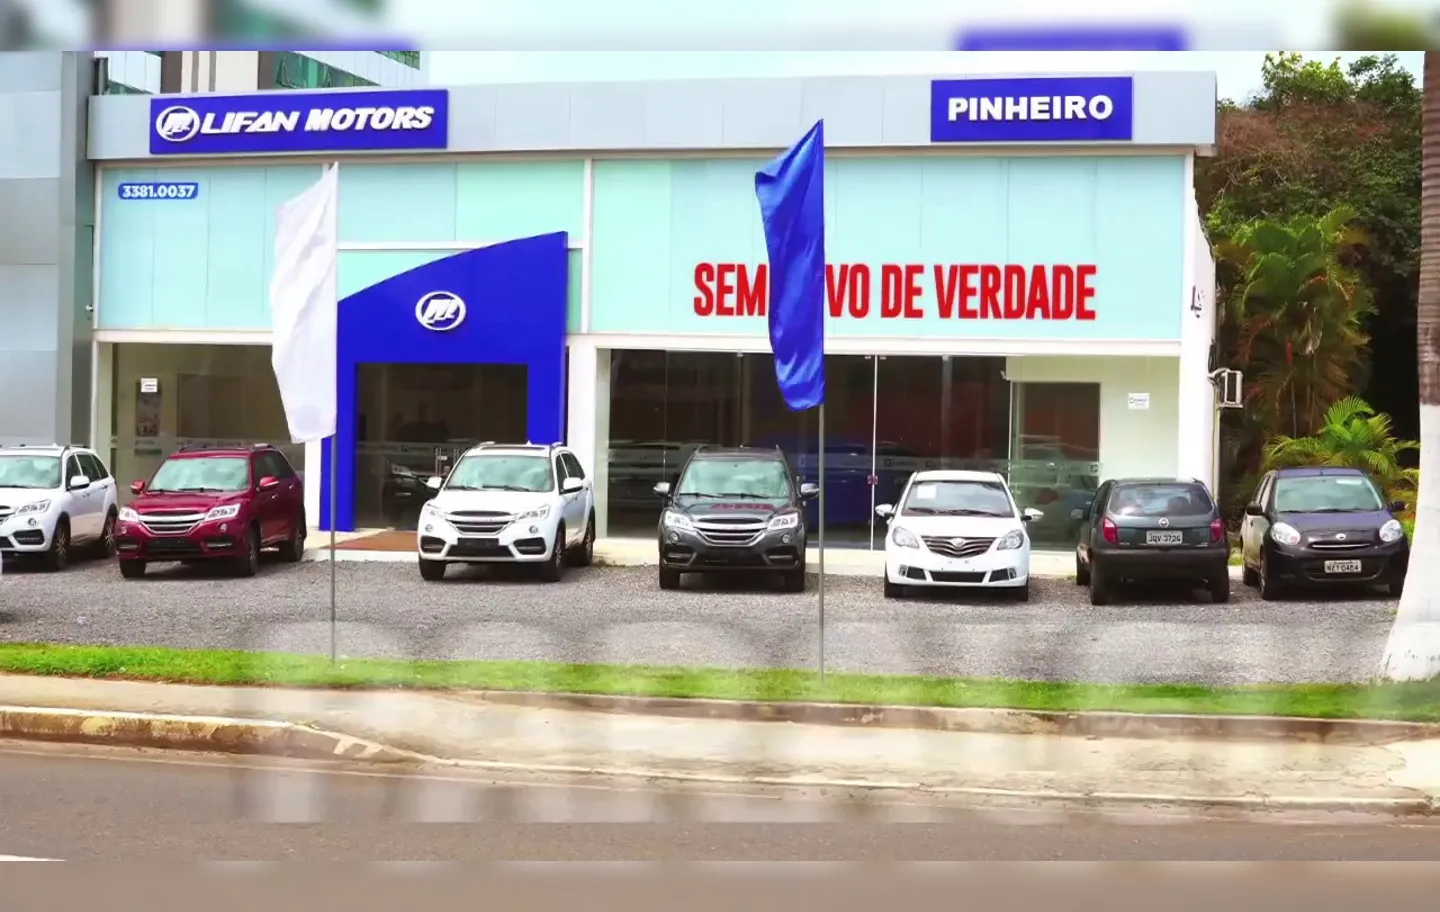 Pinheiro Lifan inaugura nova concessionária na Paralela